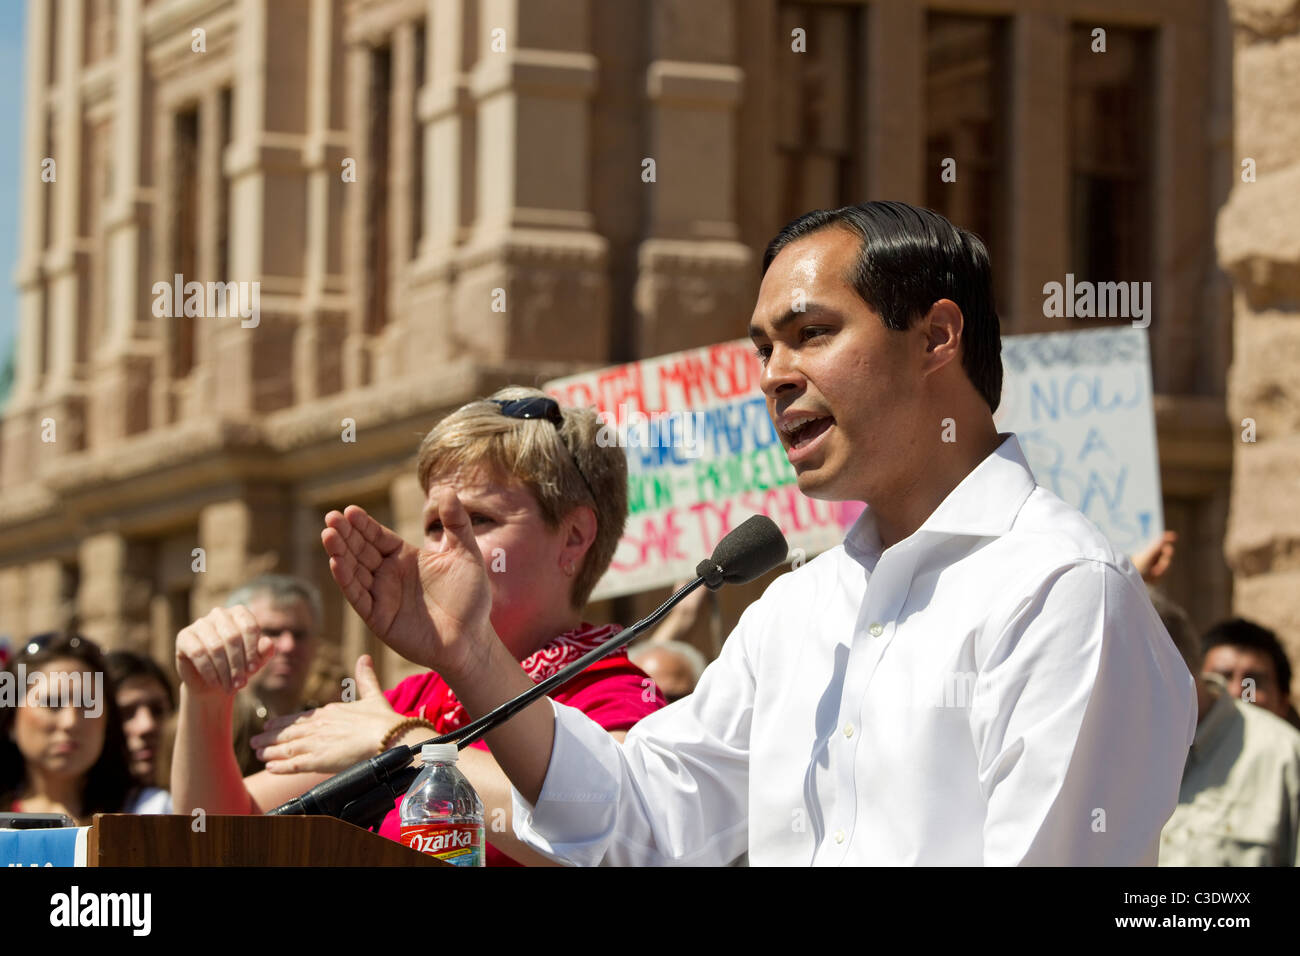 El alcalde de San Antonio, Texas, Julián Castro habla en manifestación contra los recortes del presupuesto de educación Foto de stock